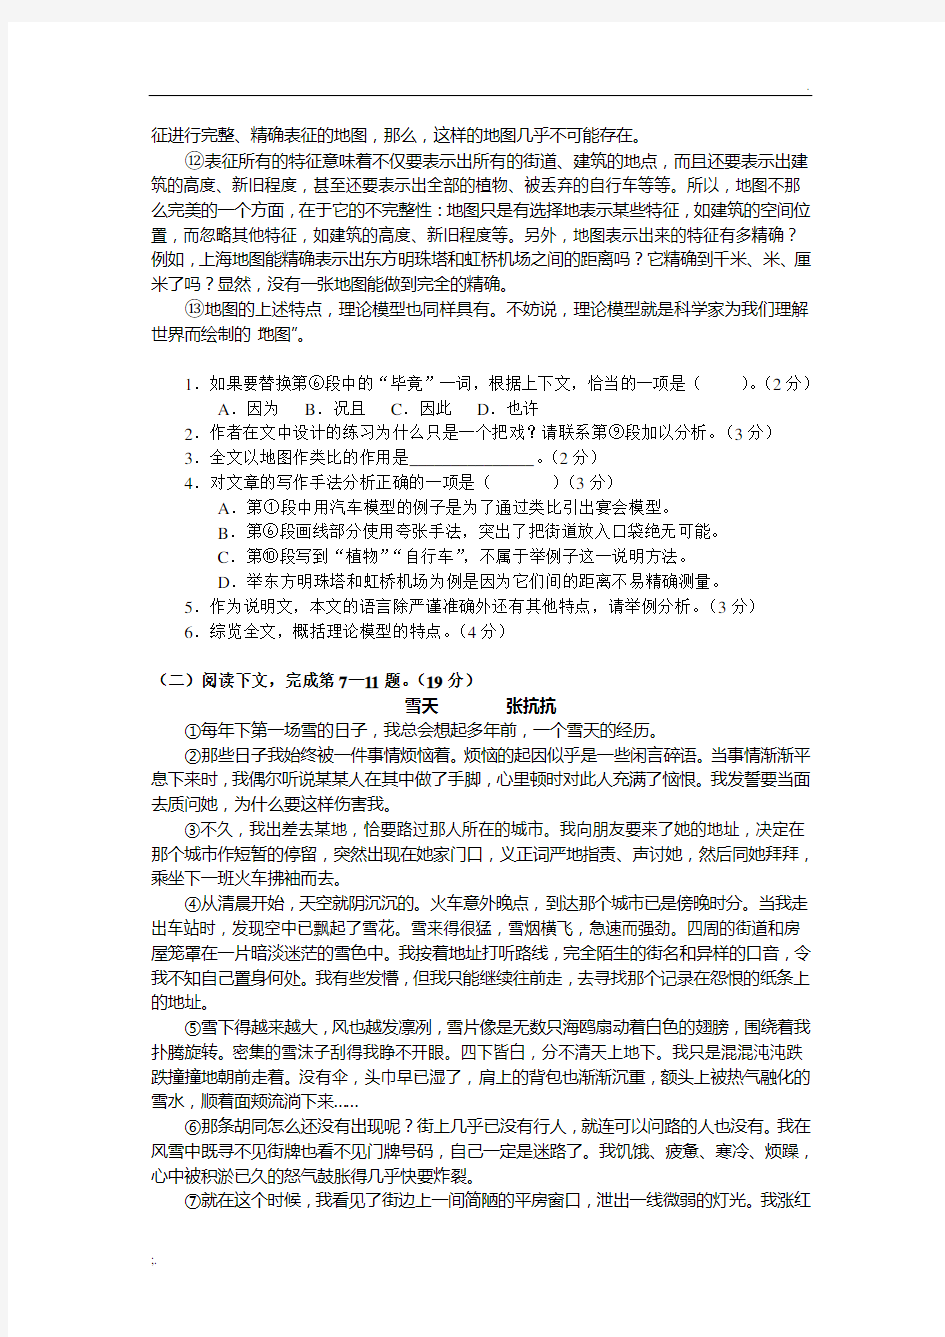 2015年上海高考语文试题及答案详细解析